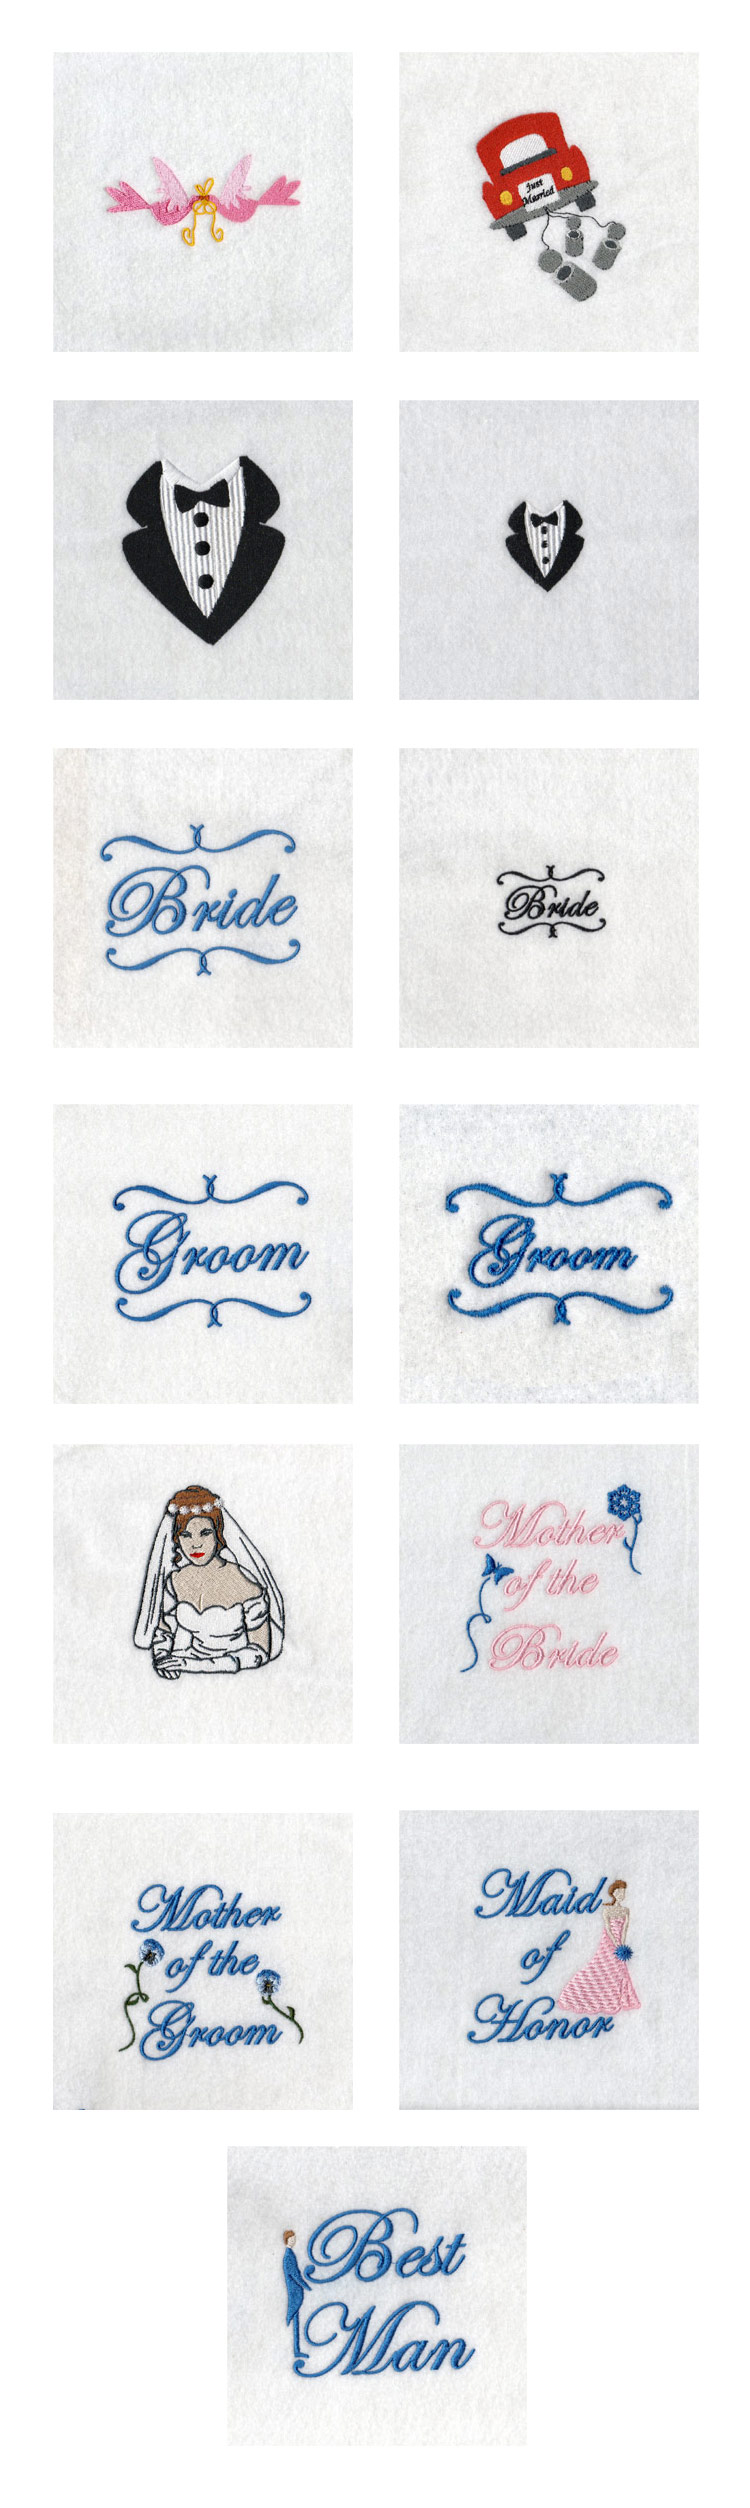 Wedding Embroidery Machine Design Details